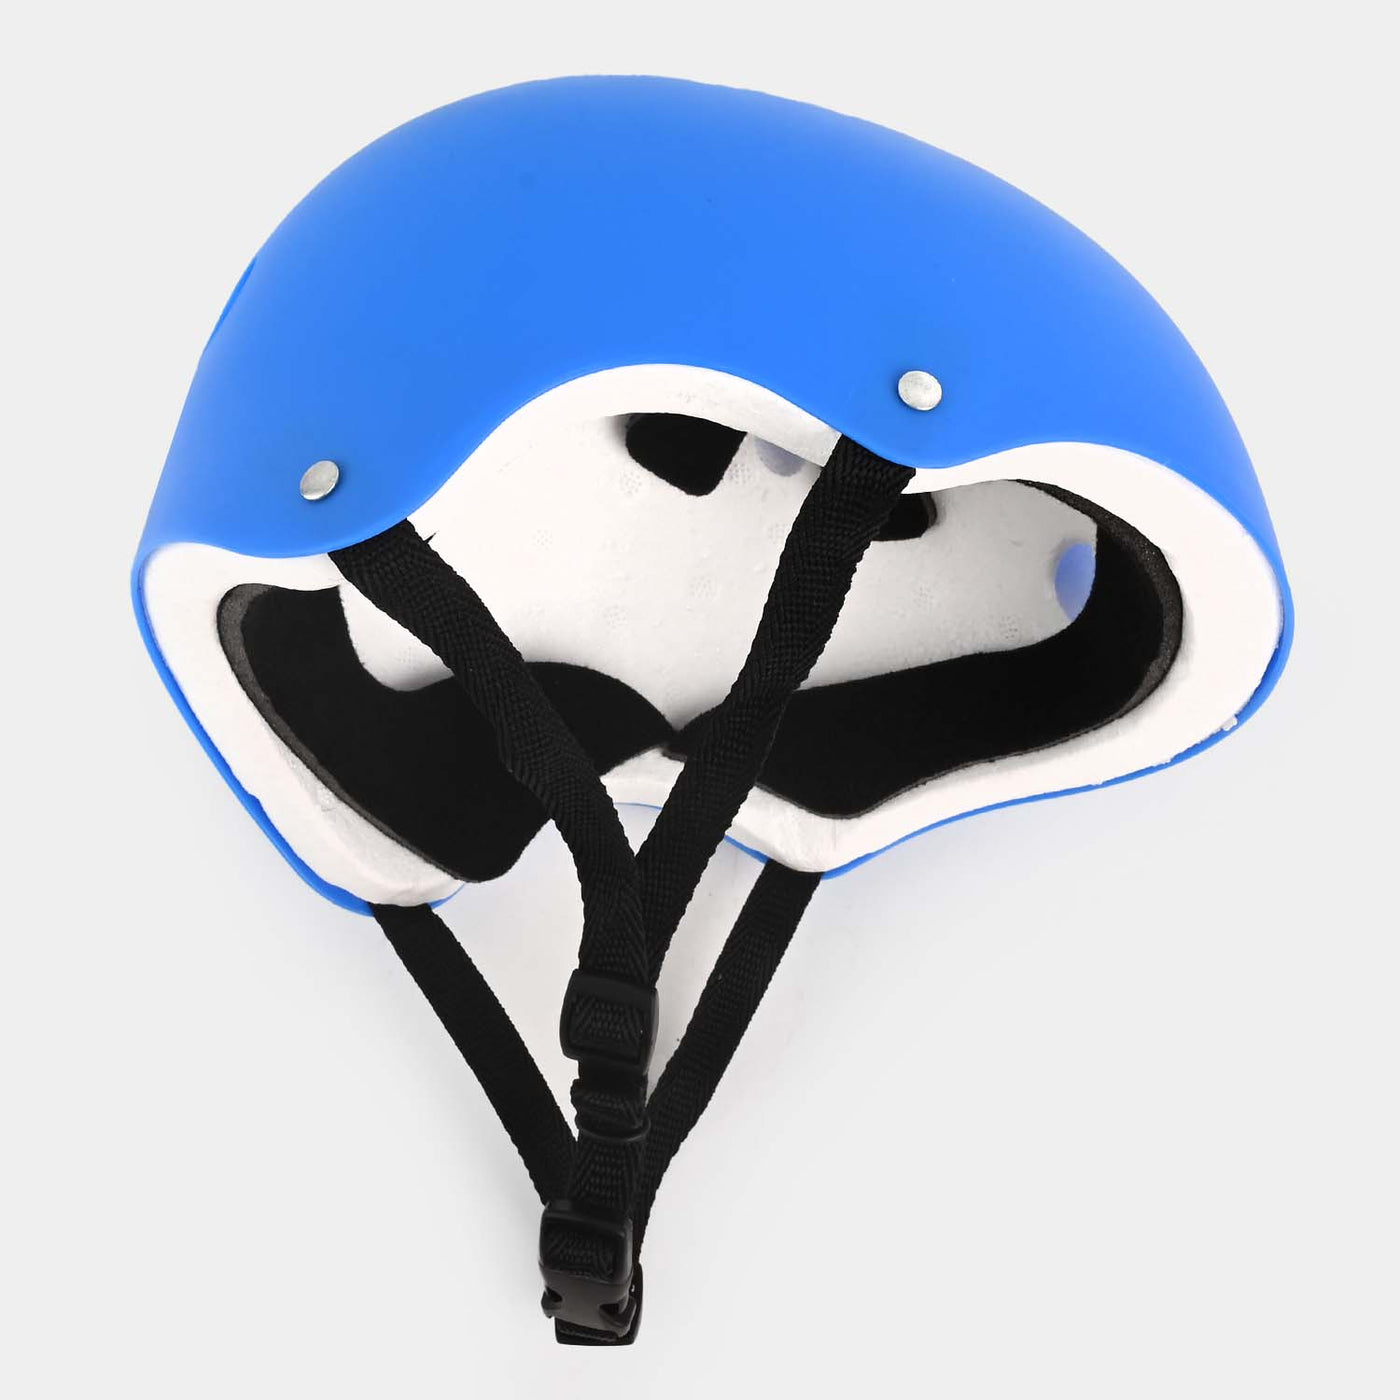 Bicycle/Skating Sports Helmet For Kids